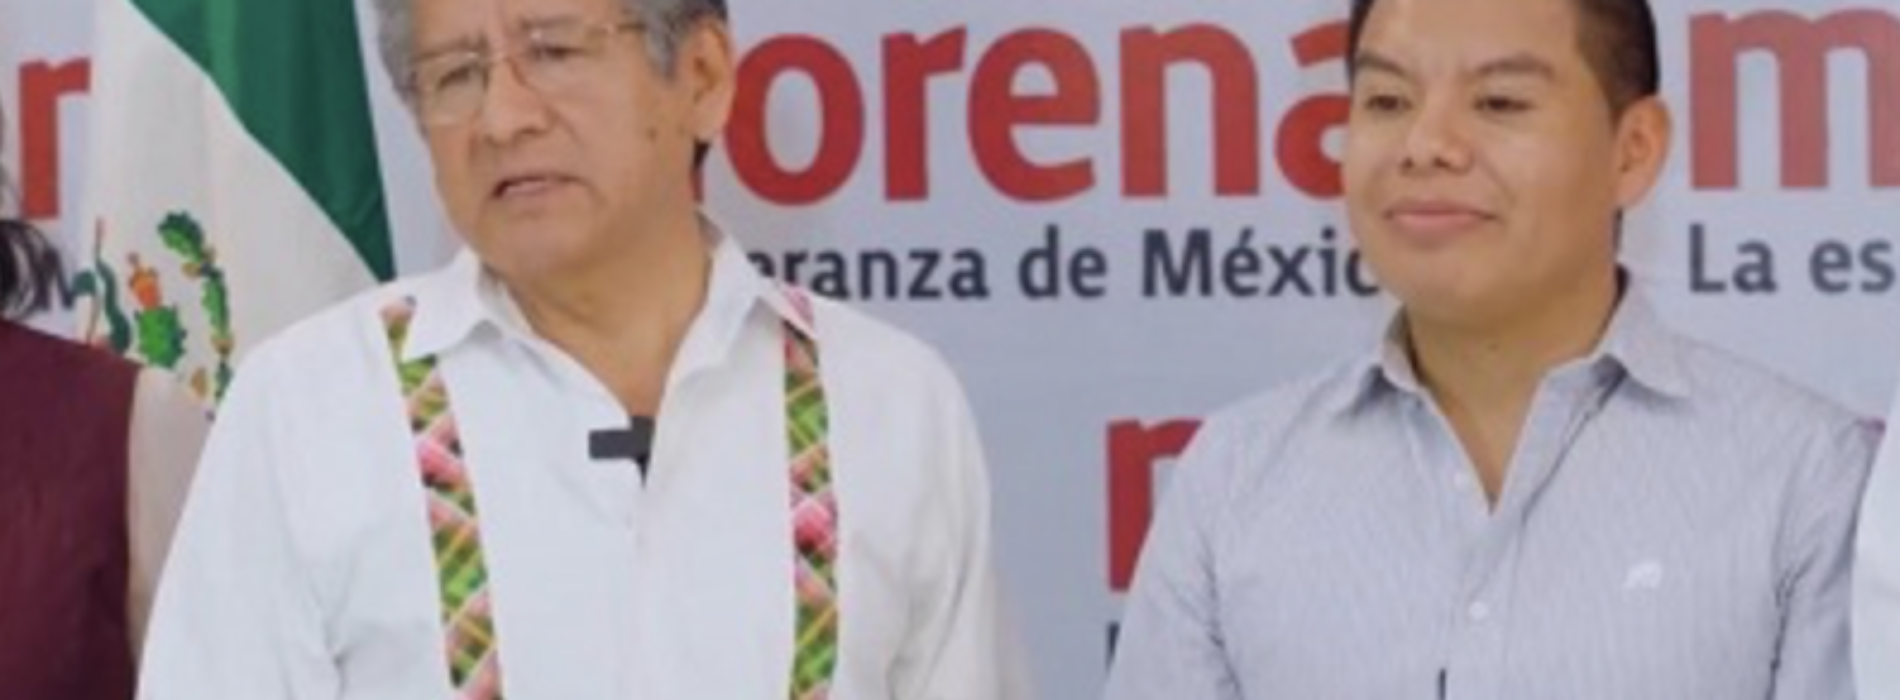 Va Martínez Neri por la reelección en Oaxaca de Juárez